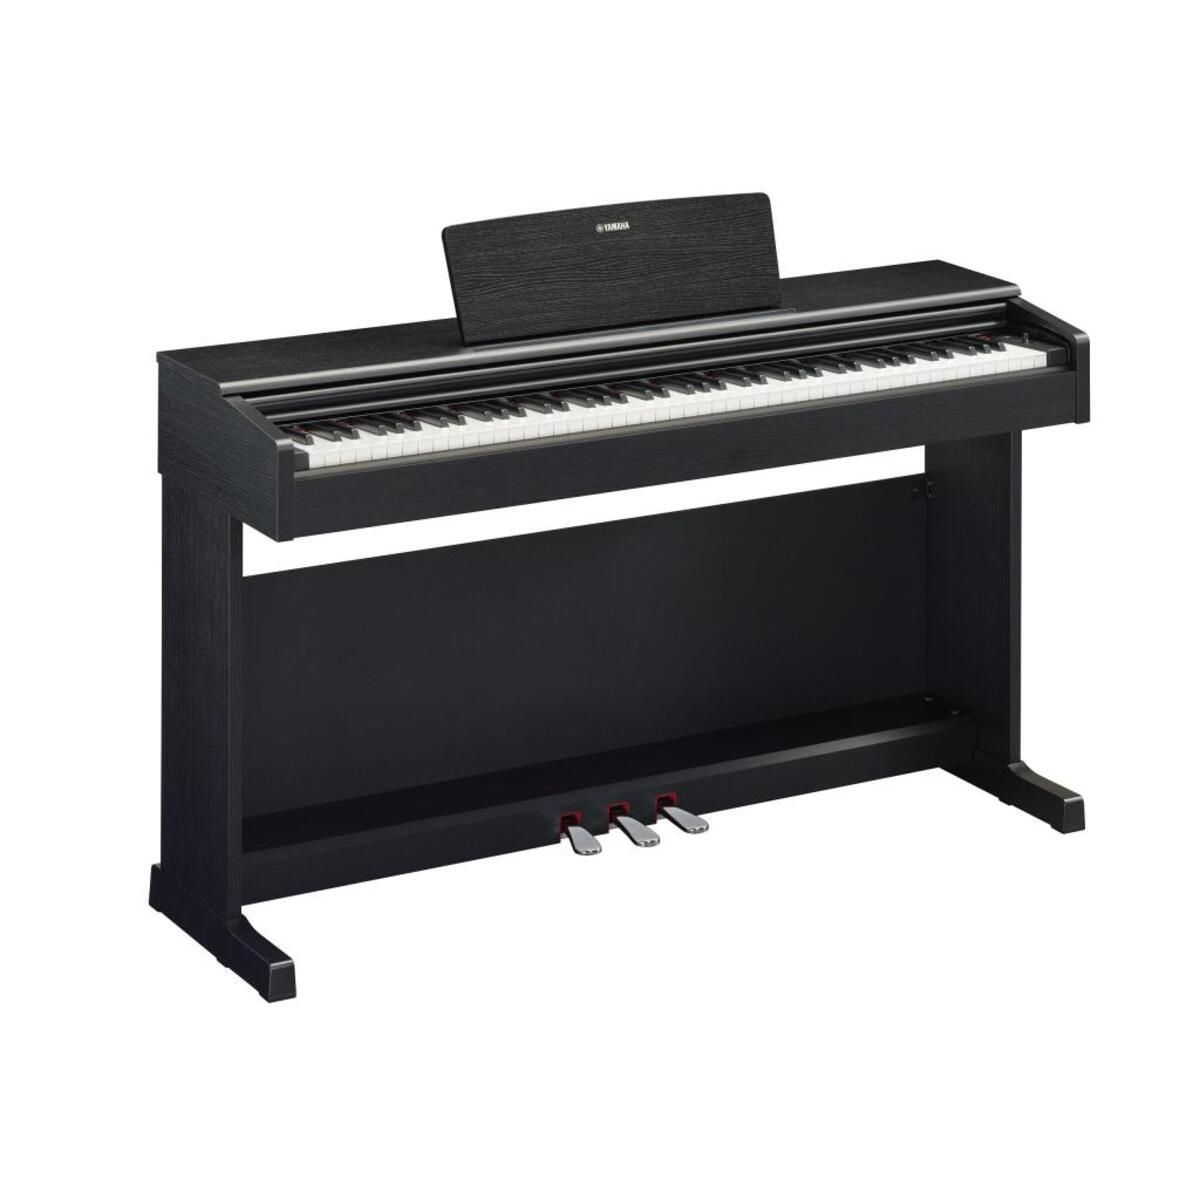 Yamaha Ydp145b Dijital Piyano (SİYAH) (TABURE KULAKLIK)